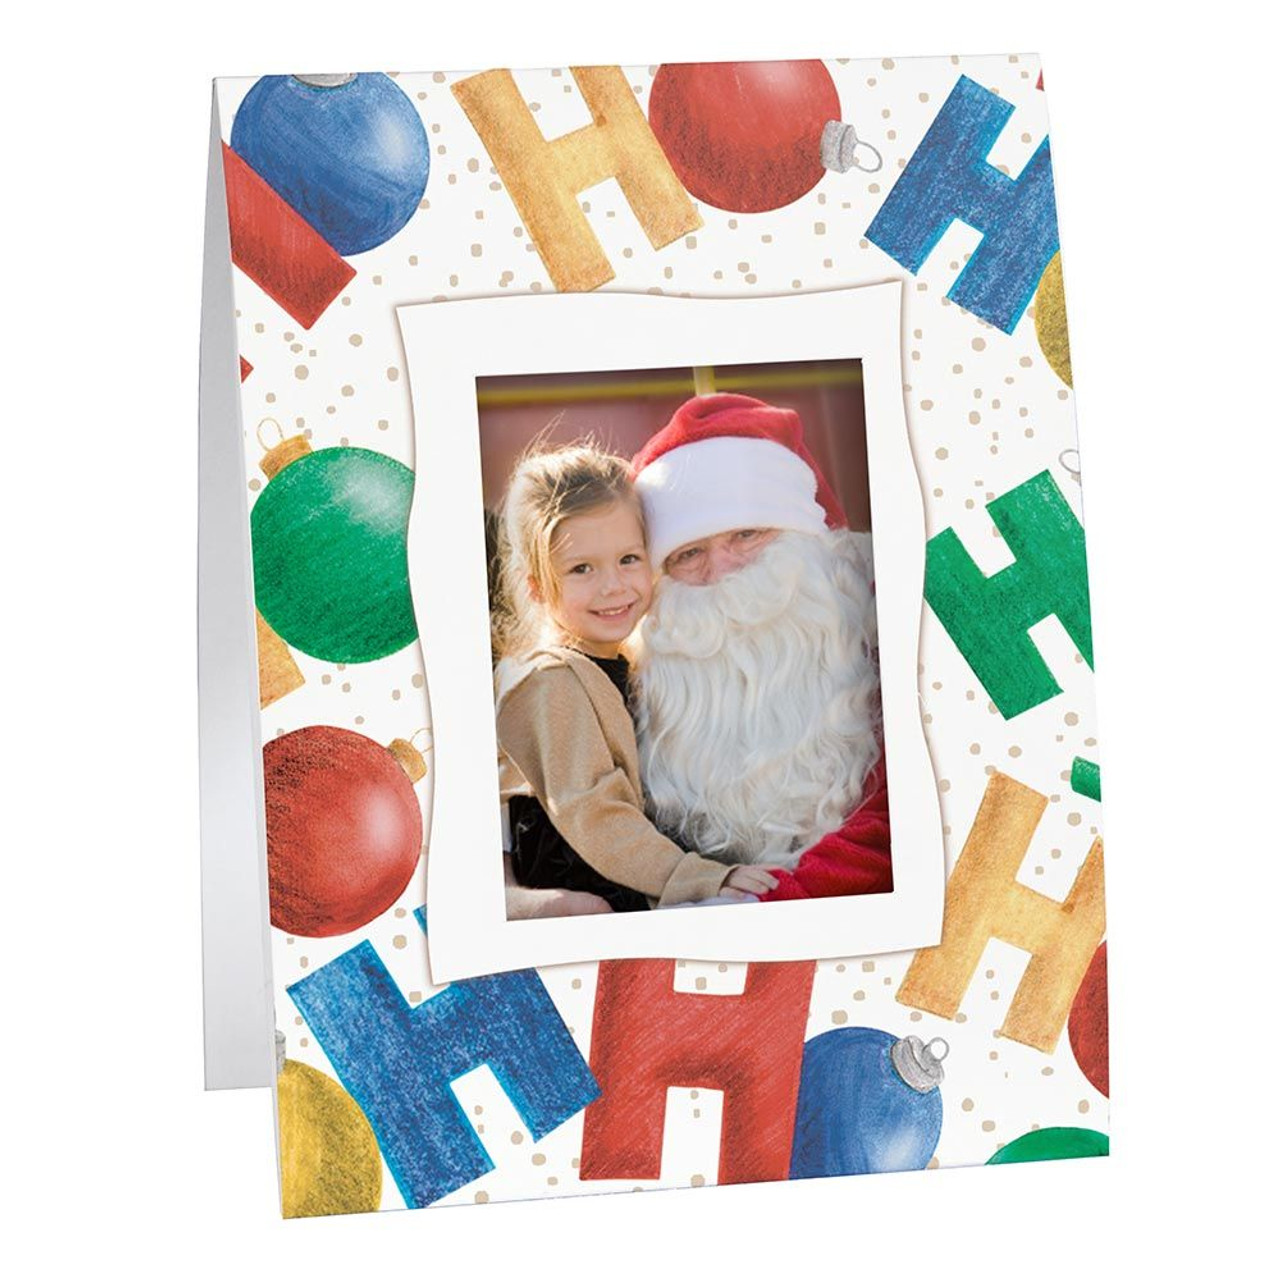 A Santa Claus Easel -200 Paper Photo Frame 4x6.